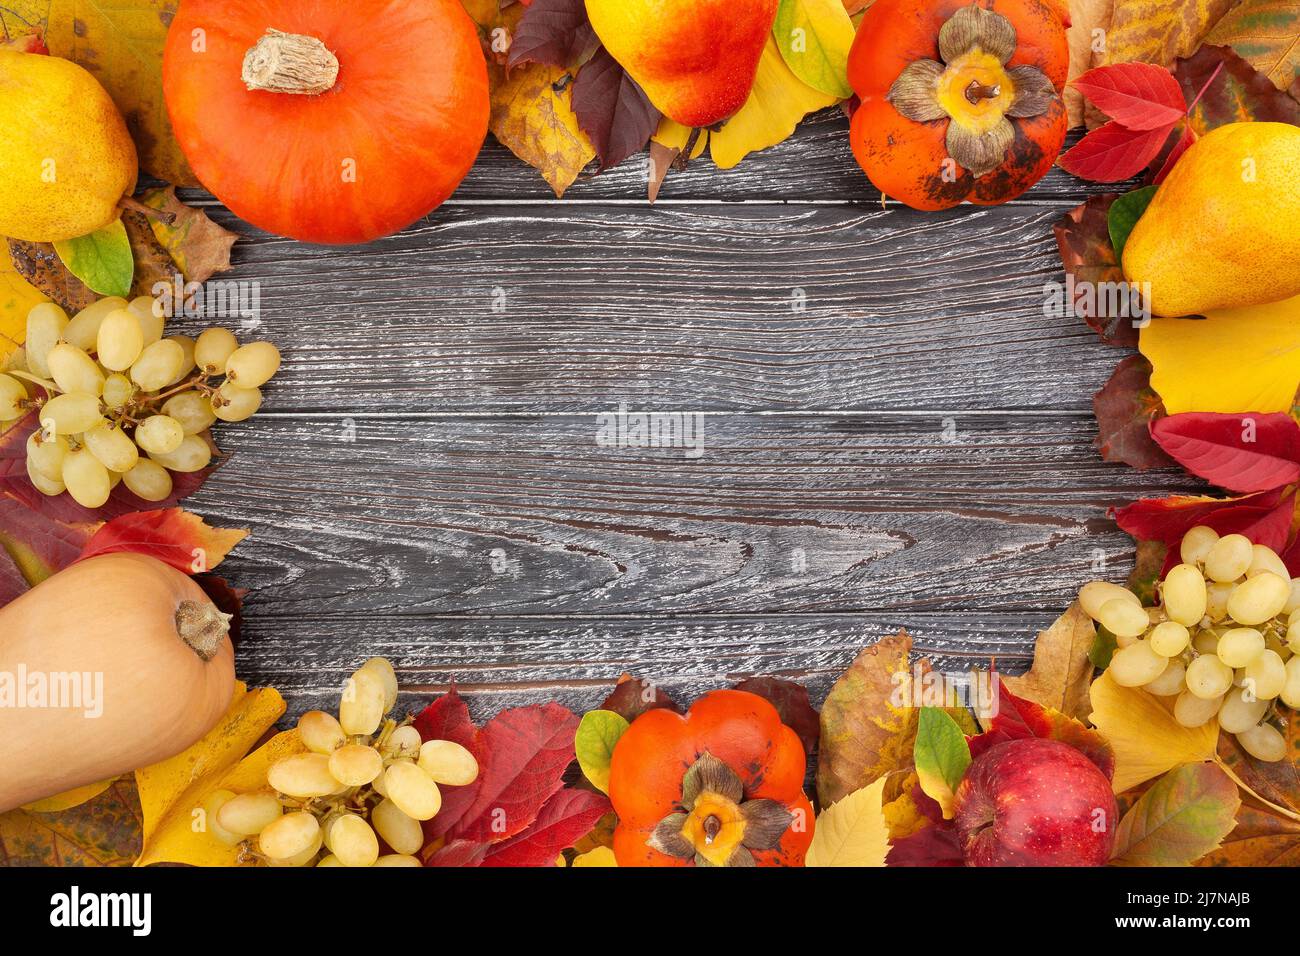 Herbst Blätter Früchte Gemüse Rahmen auf Holz Hintergrund Stockfoto